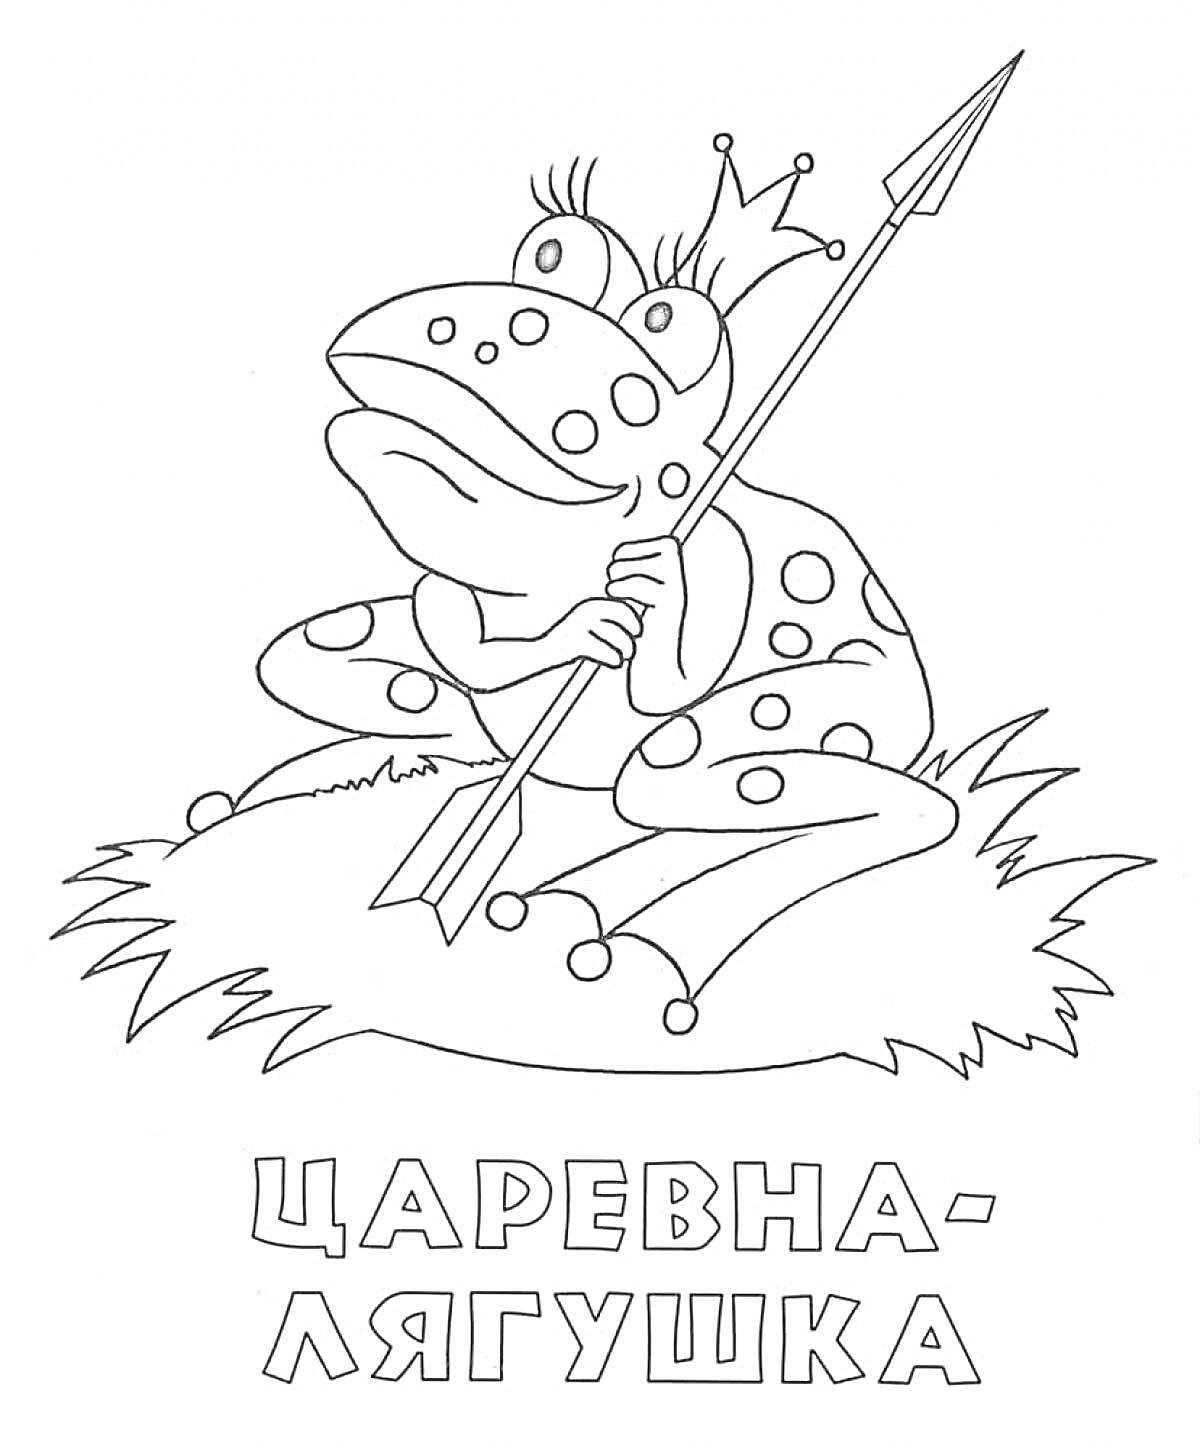 Раскраска Царевна-лягушка с короной и стрелой на голове, сидящая на траве